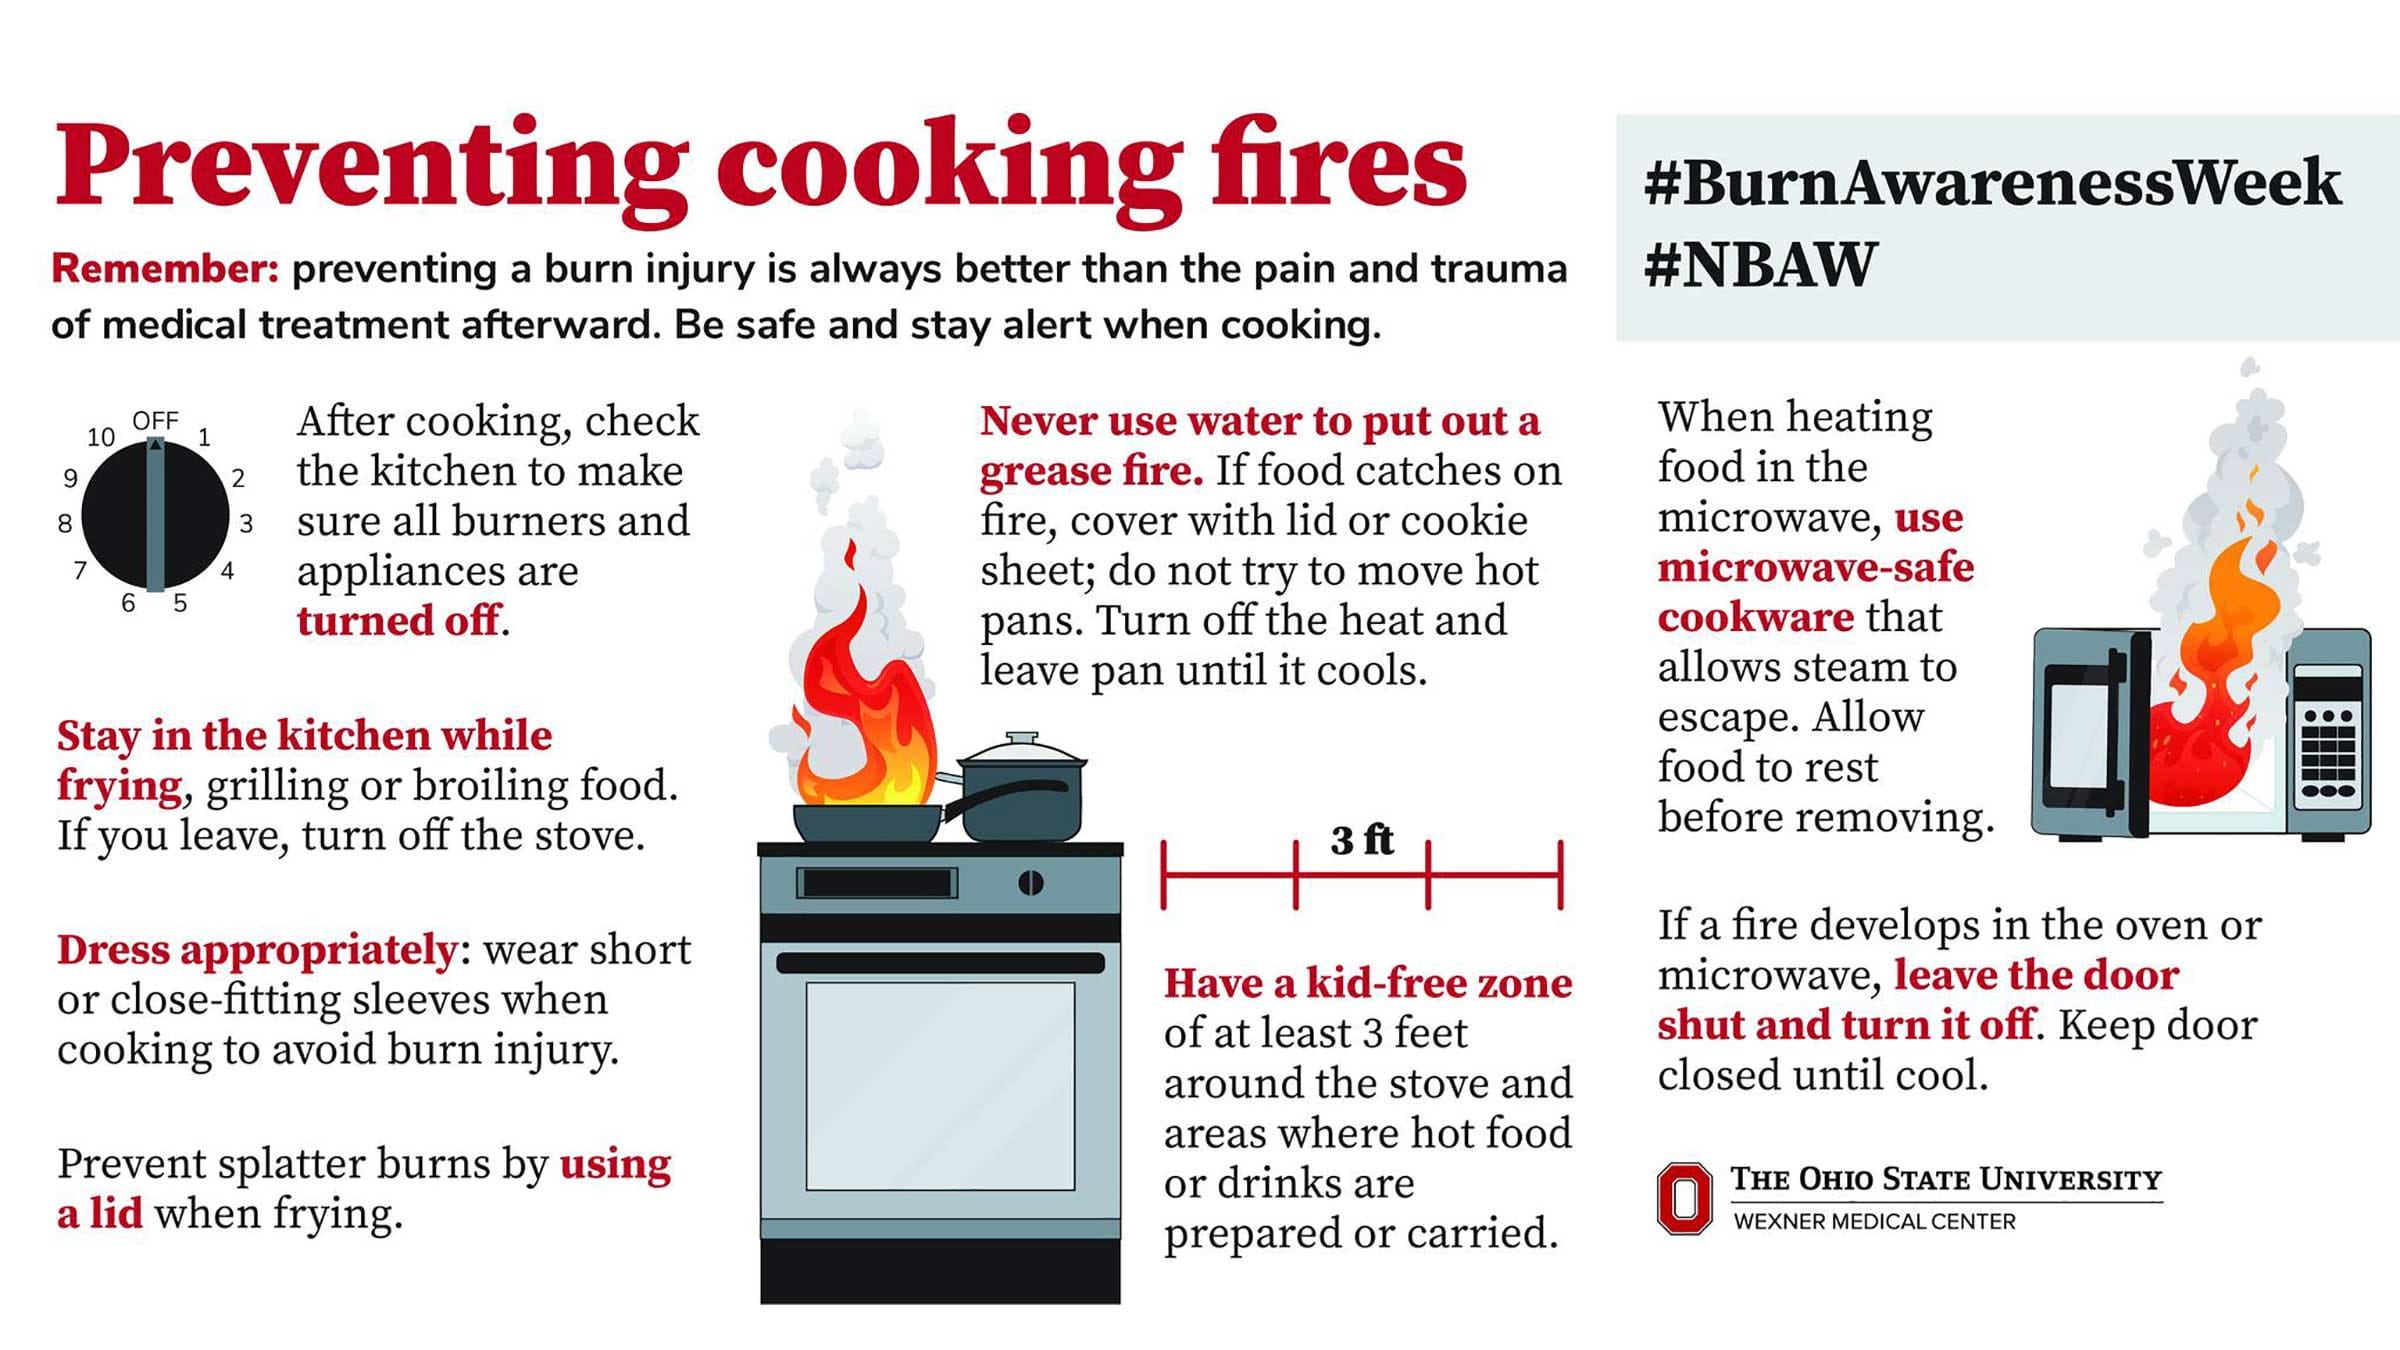 https://health.osu.edu/-/media/health/images/stories/2022/02/burn-awareness-week/preventing-cooking-fires.jpg